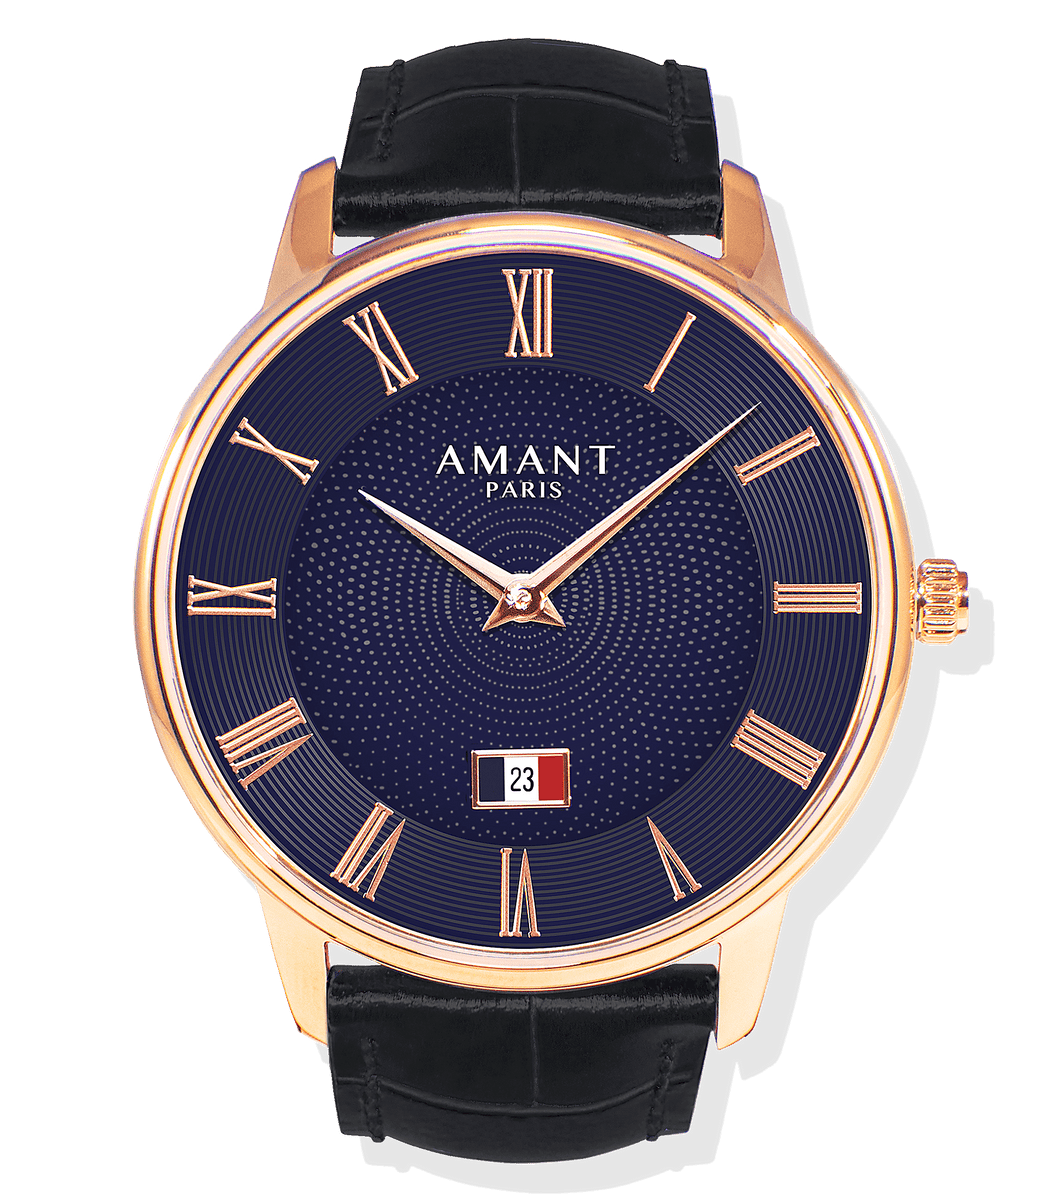 Amant Paris Watch - Pop Up Life